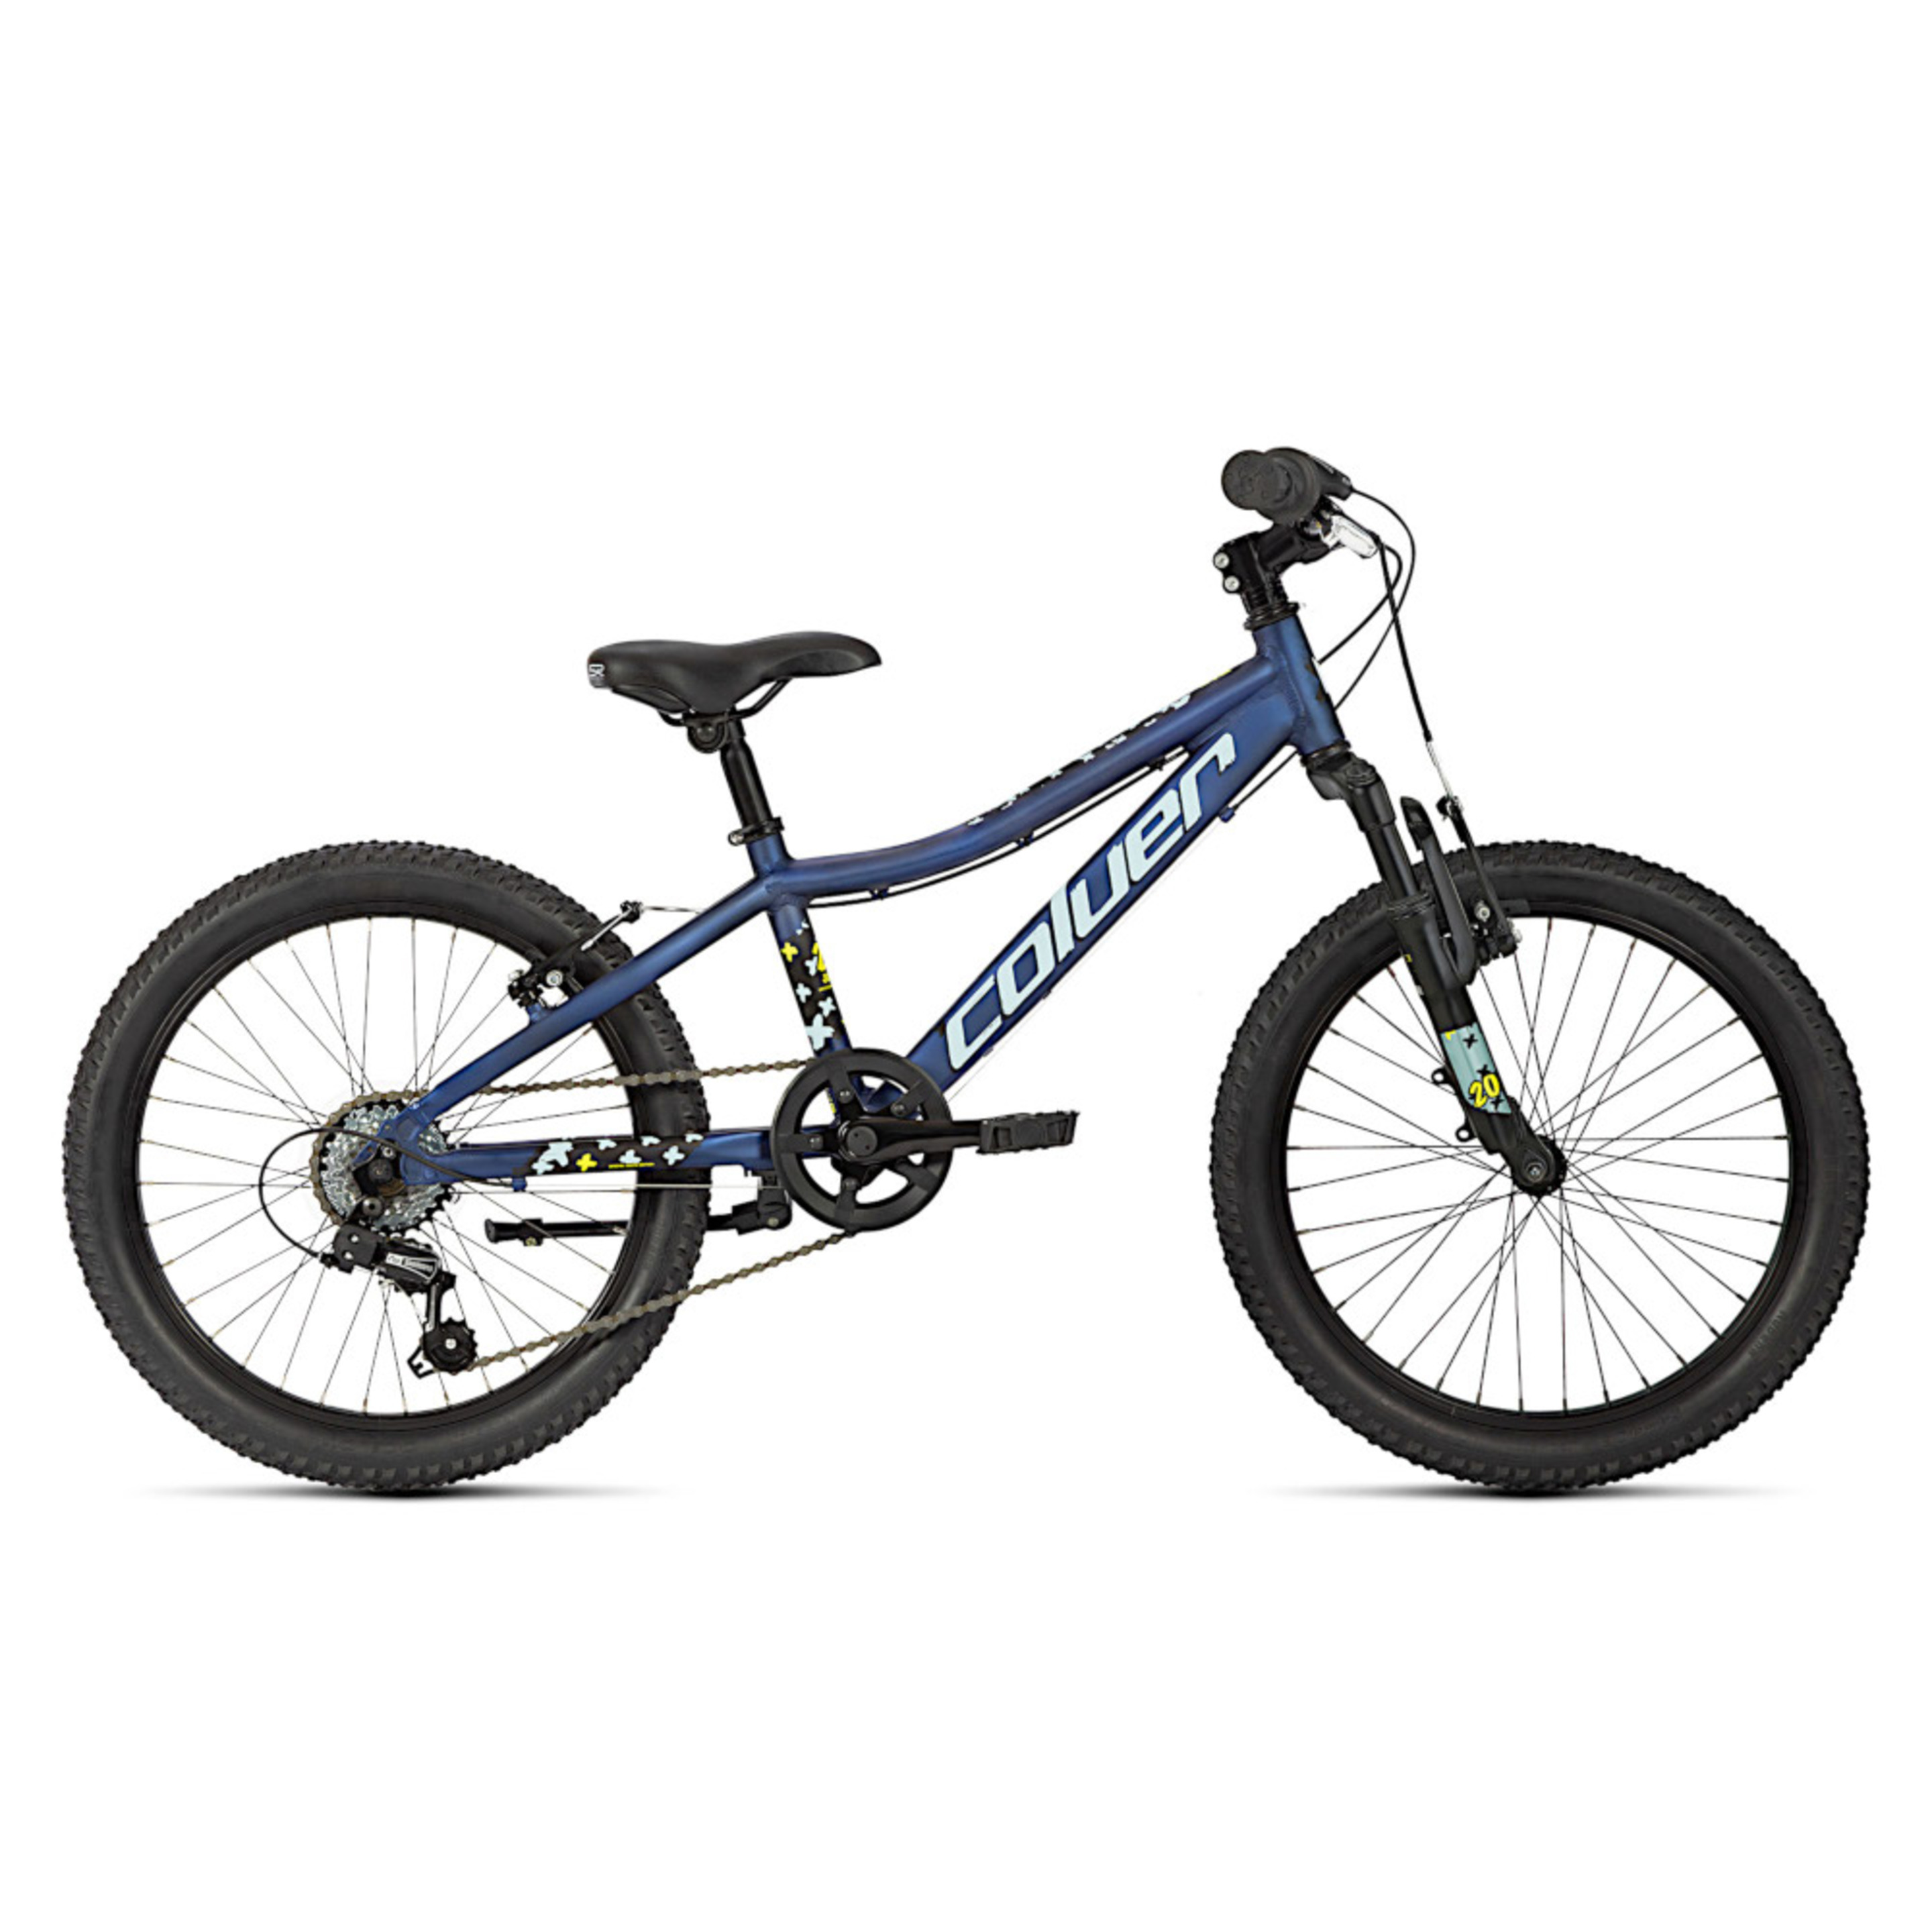 Bicicleta Infantil 20" Coluer Rider Aluminio 6vl Suspension - Azul  MKP